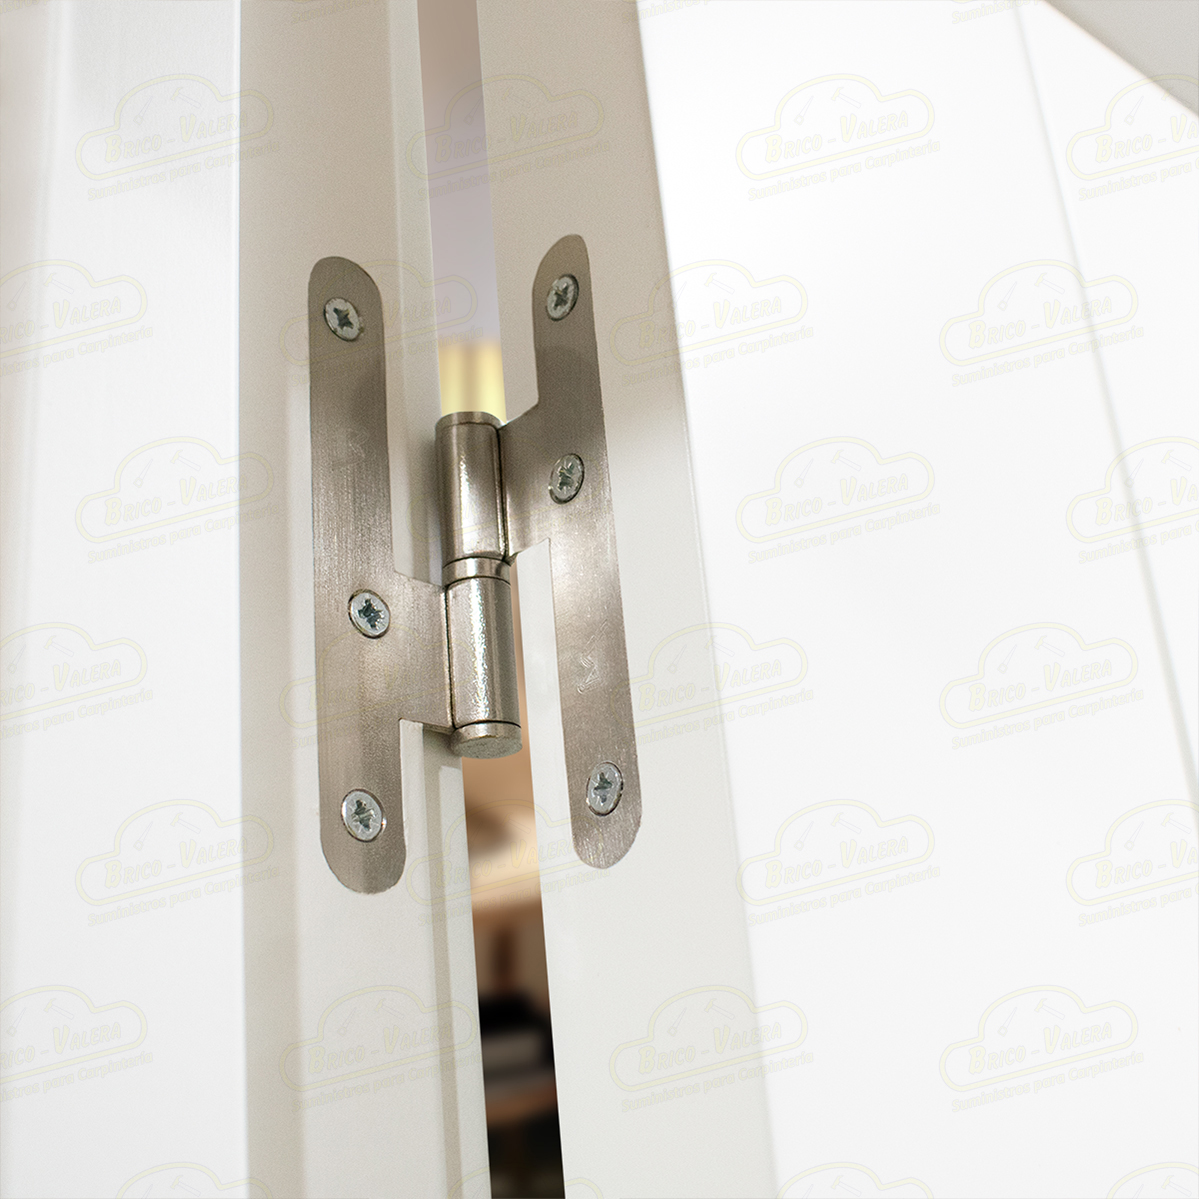 Puerta Premium LP-900 Lacada Blanca de Interior en Block (Maciza)